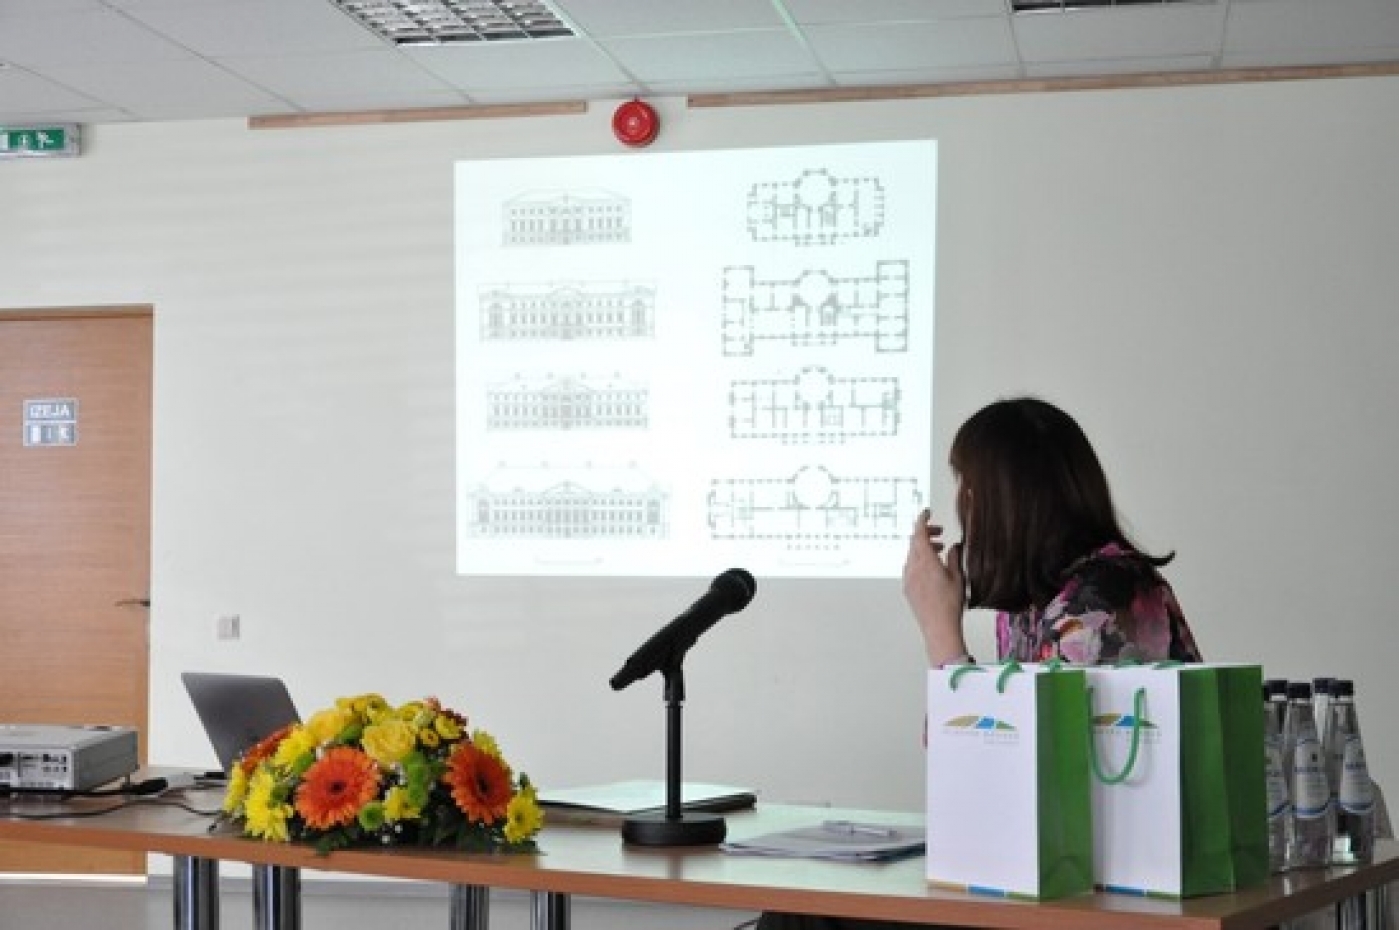 Noticis projekta „Elejas muižas apbūves restaurācija” atklāšanas seminārs